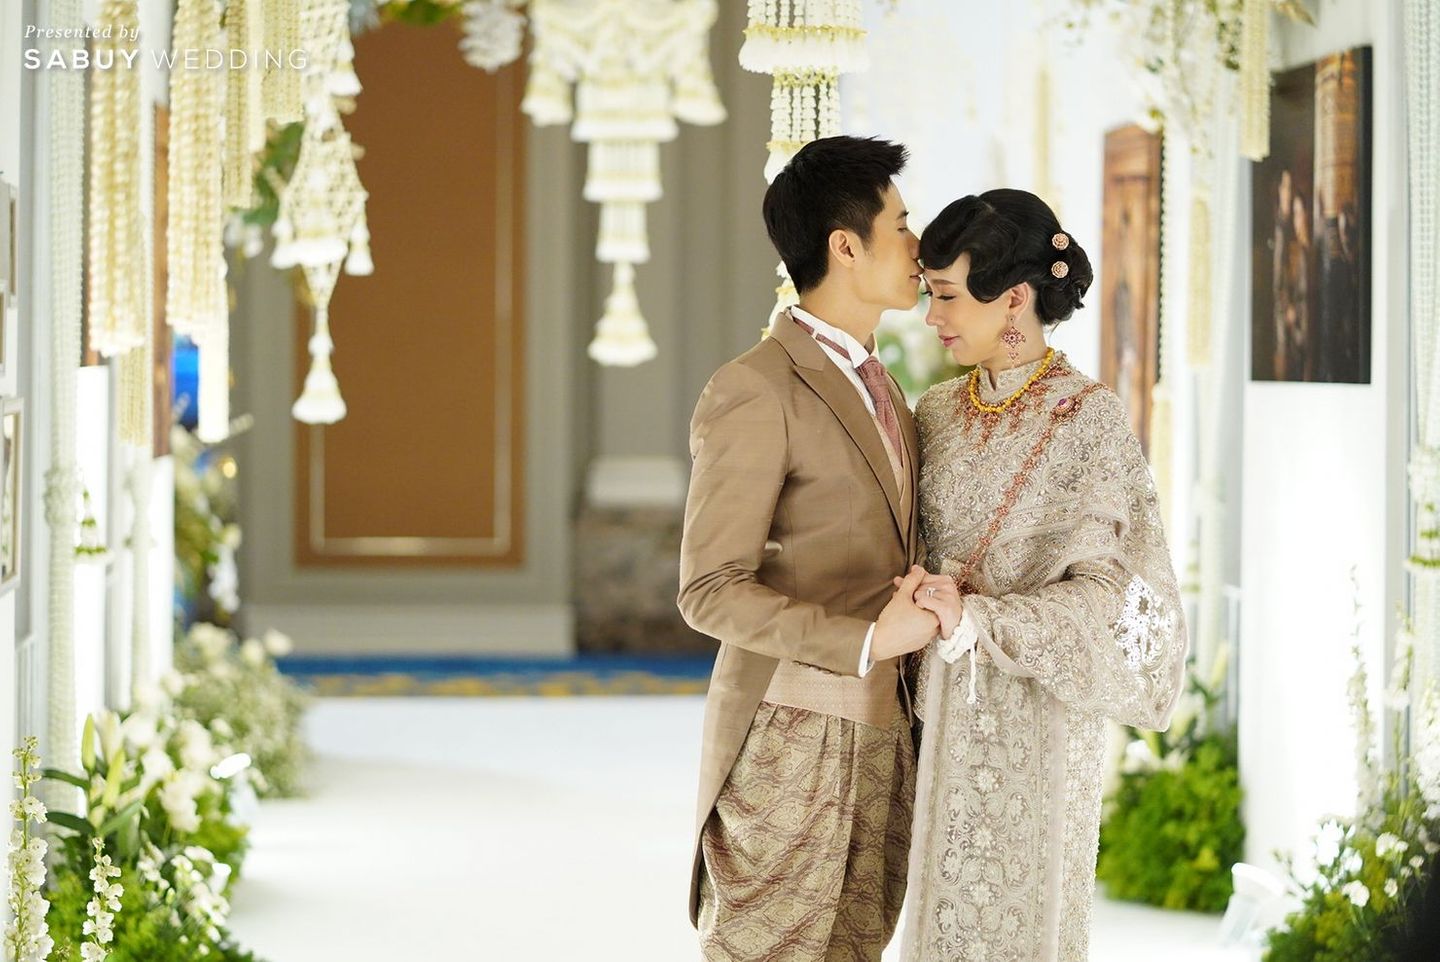 เจ้าบ่าว,เจ้าสาว,ตกแต่งงานแต่ง,weddingplanner รีวิวงานแต่งไทยประยุกต์ สวยคลาสสิกด้วยโทนขาวทอง @ The Berkeley Hotel Pratunam